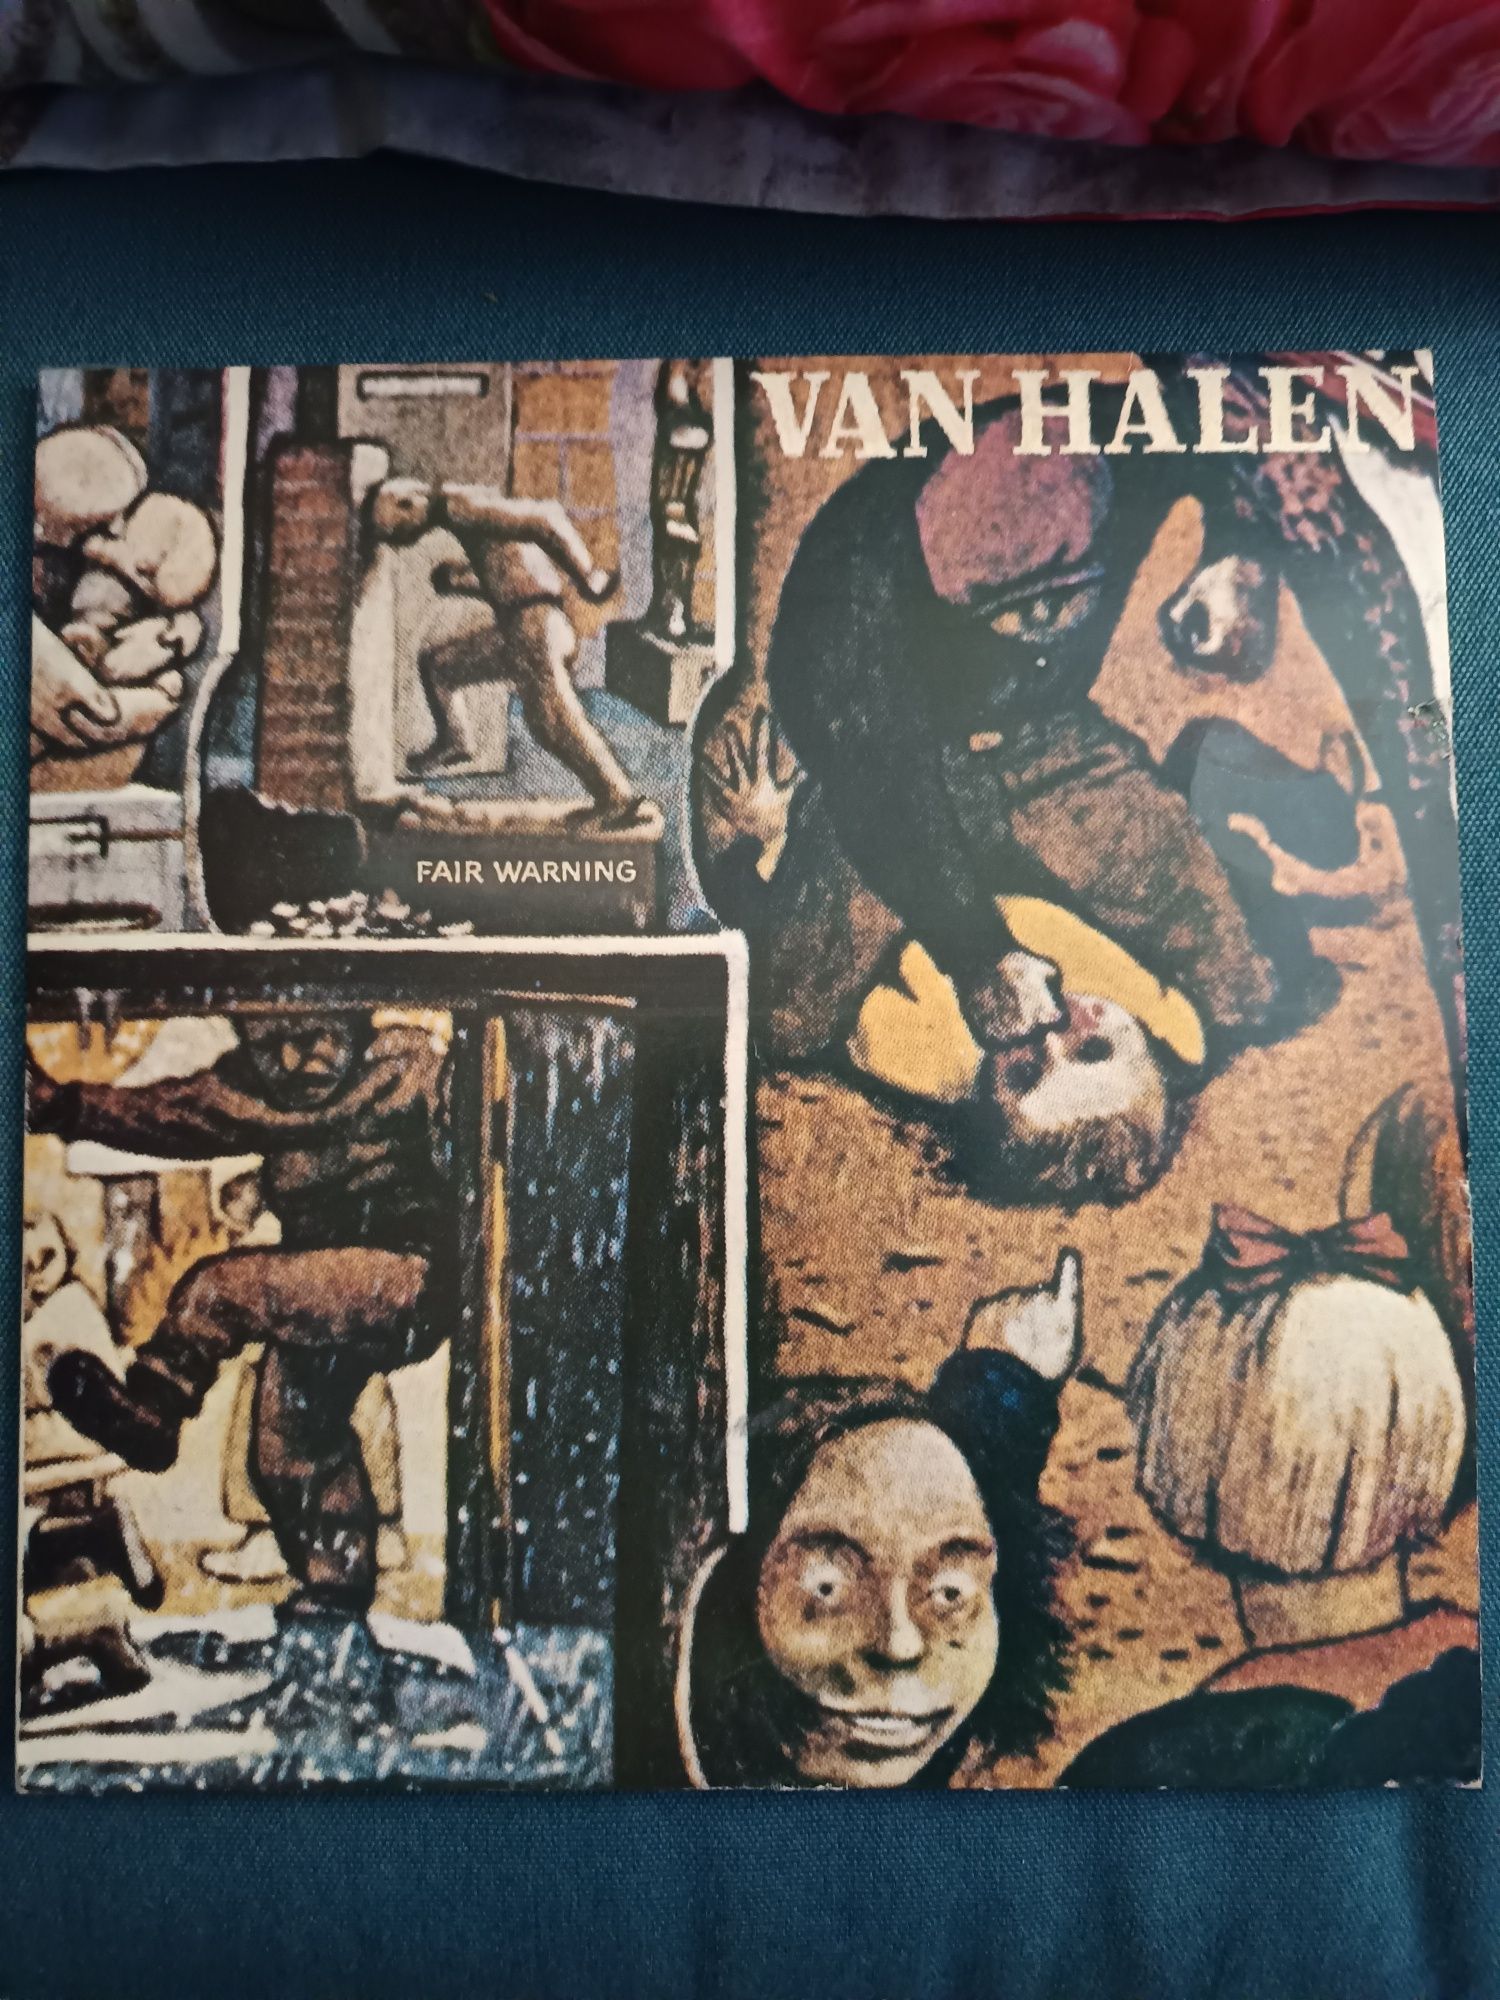 Van Halen vinyl x3